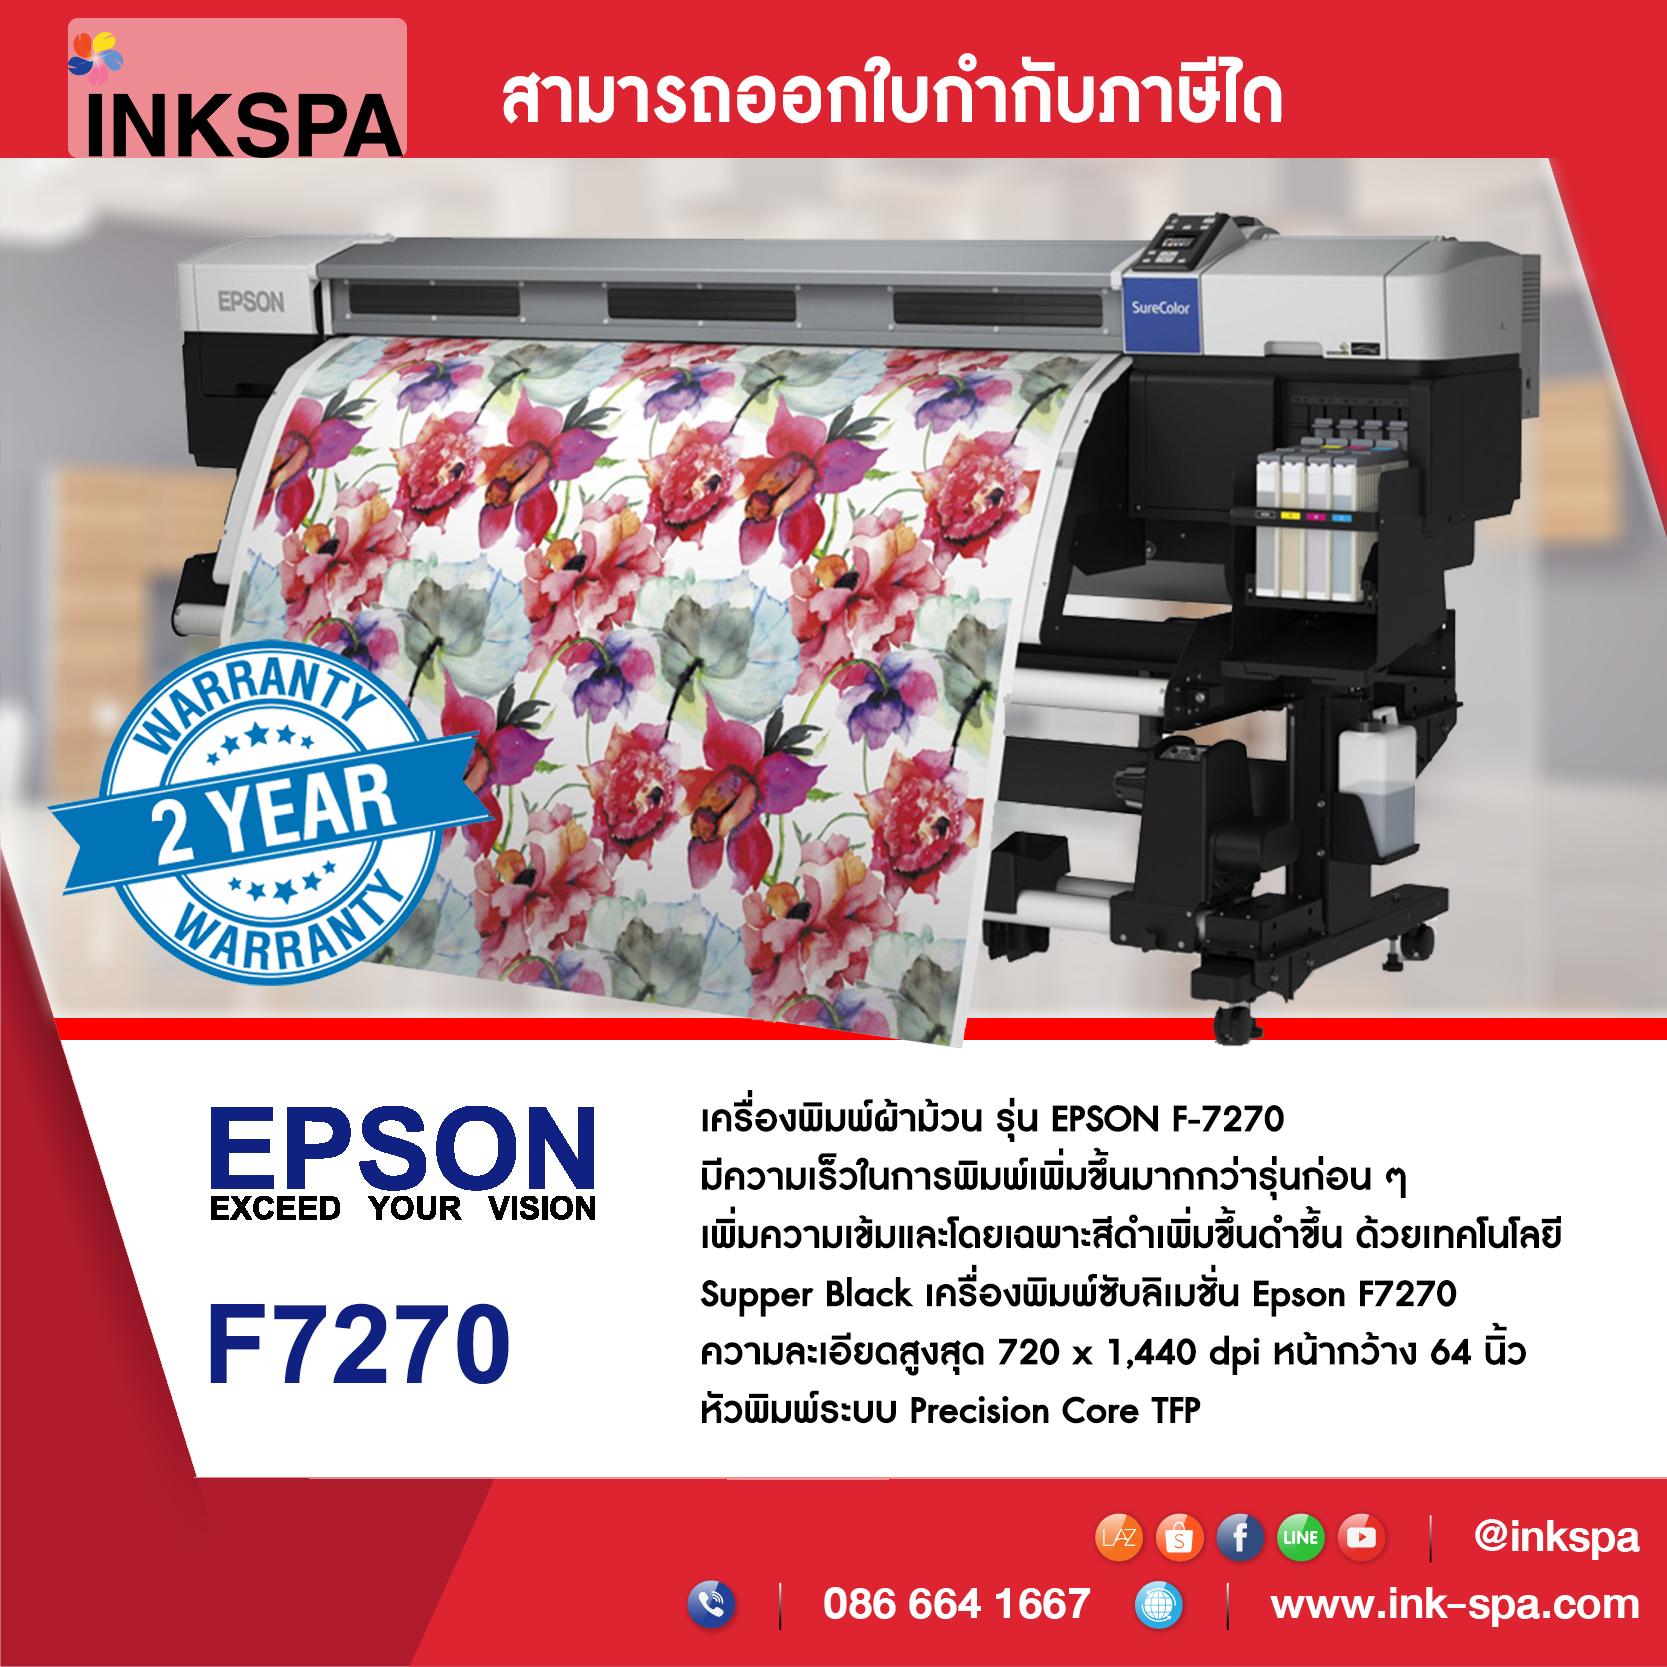 เครื่องพิมพ์ผ้า EPSON SureColor SC-F7270 เครื่องพิมพ์ซับลิเมชั่น เครื่องพิมพ์ผ้าม้วน Dye-Sublimation หัวพิมพ์ระบบ Precision Core TFP ราคาพิเศษสุดๆก่อนปรับราคา